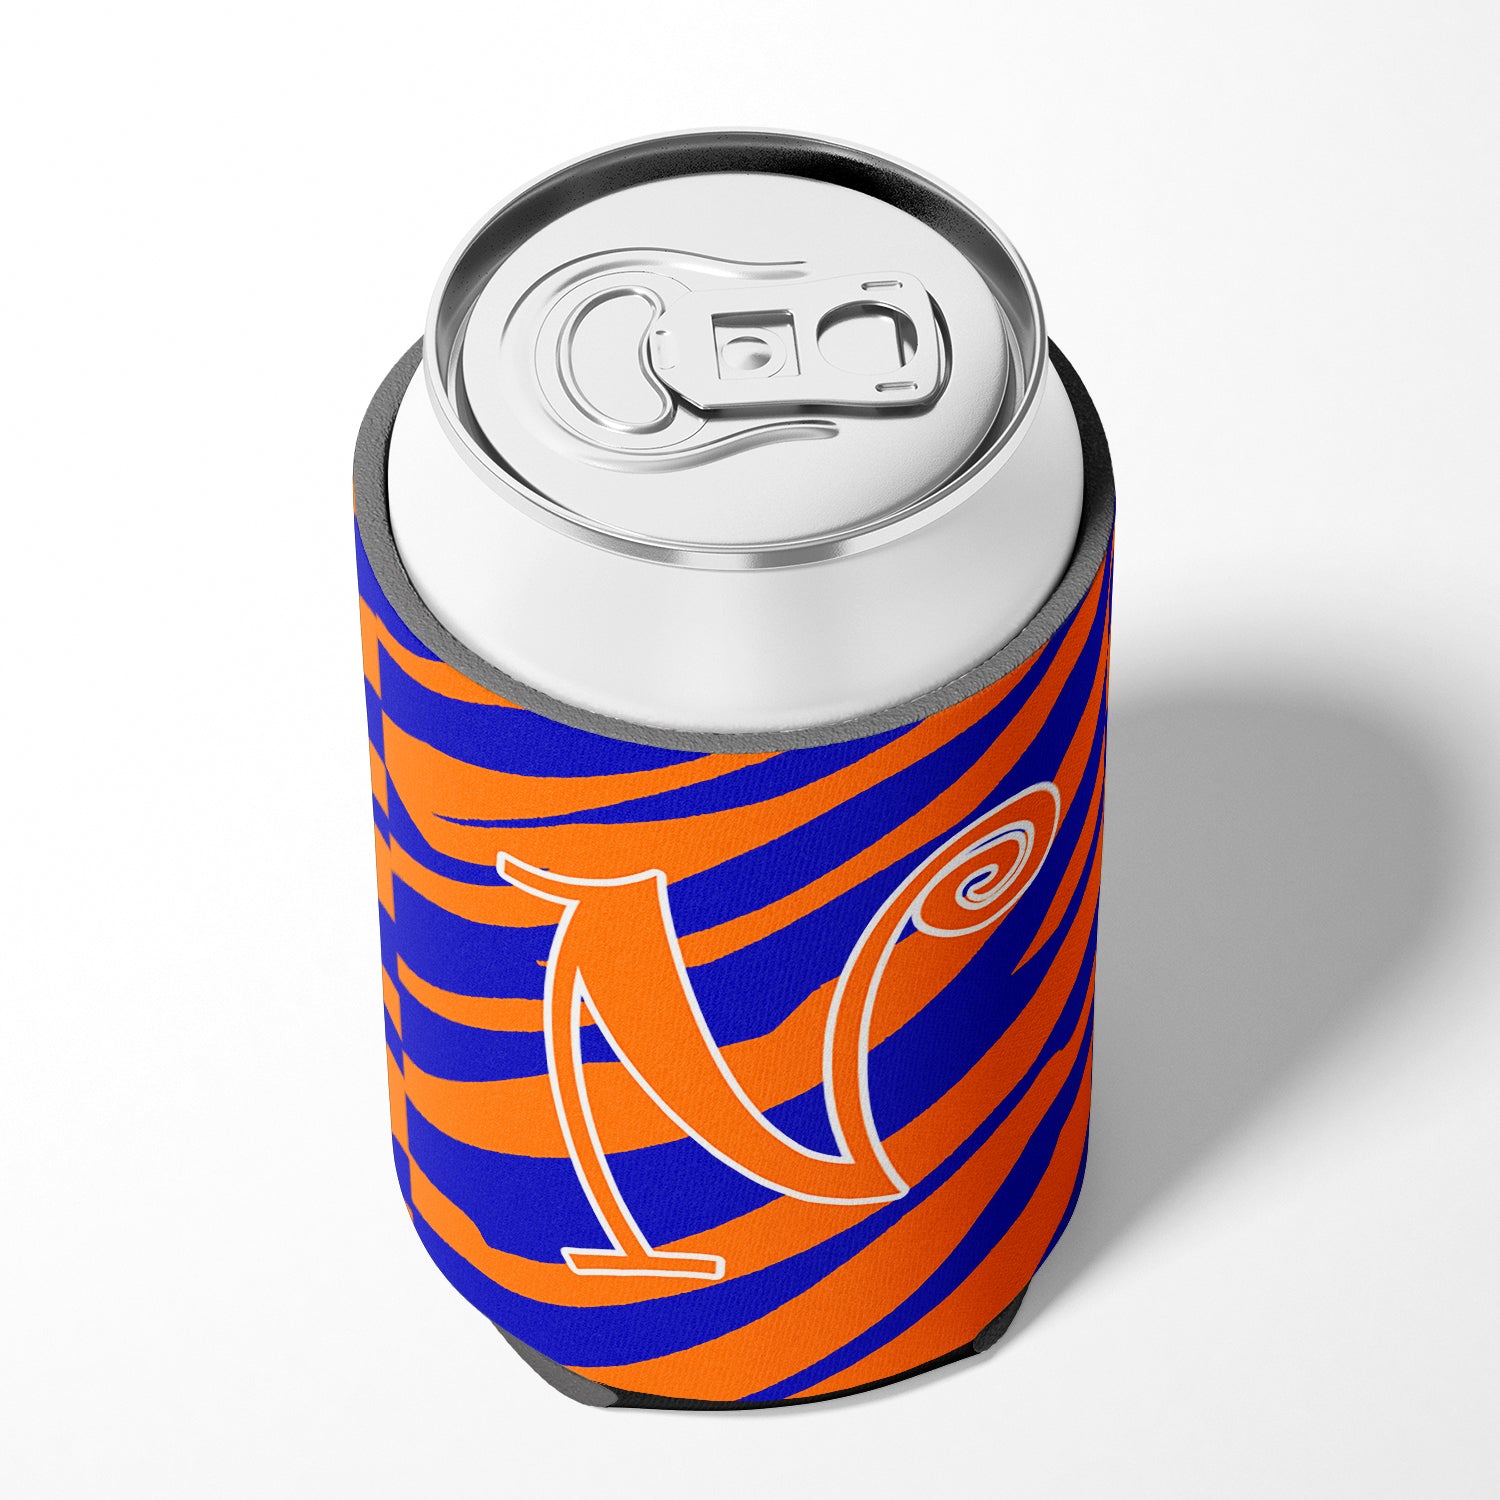 Letter N Initial Monogram - Tiger Stripe Blue and Orange Can Beverage Insulator Hugger